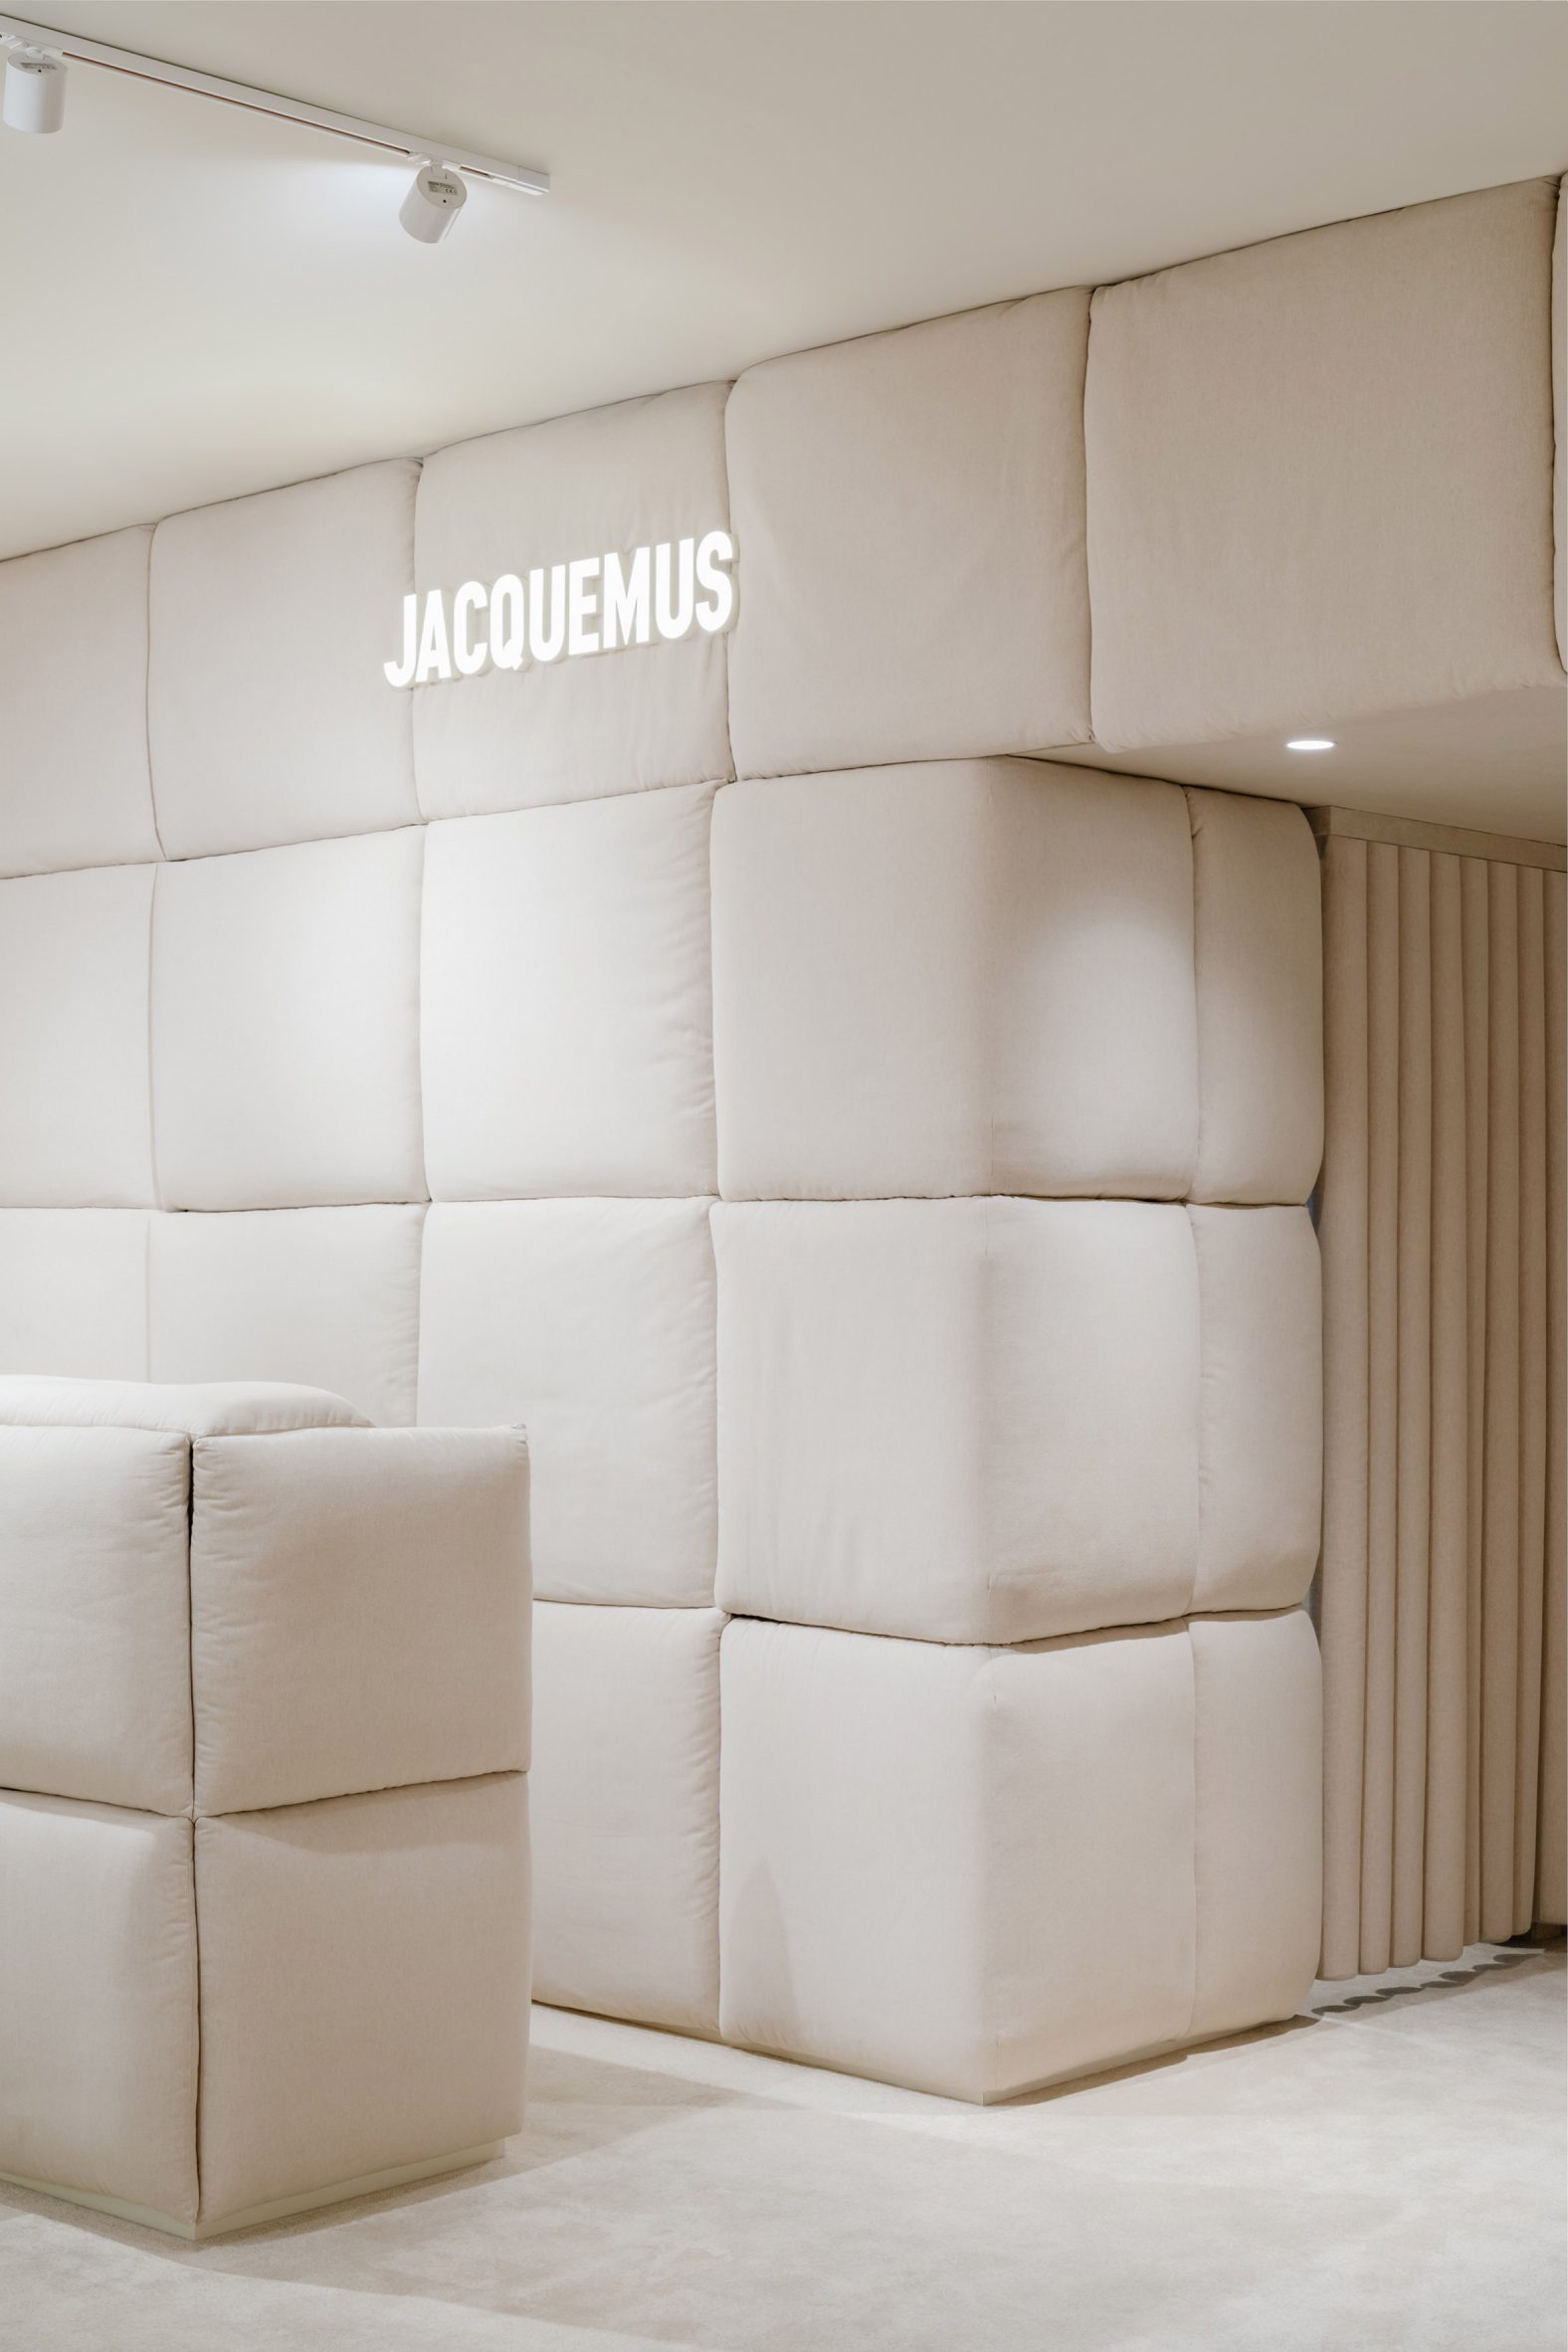 Cream pillows and a Jacquemus sign